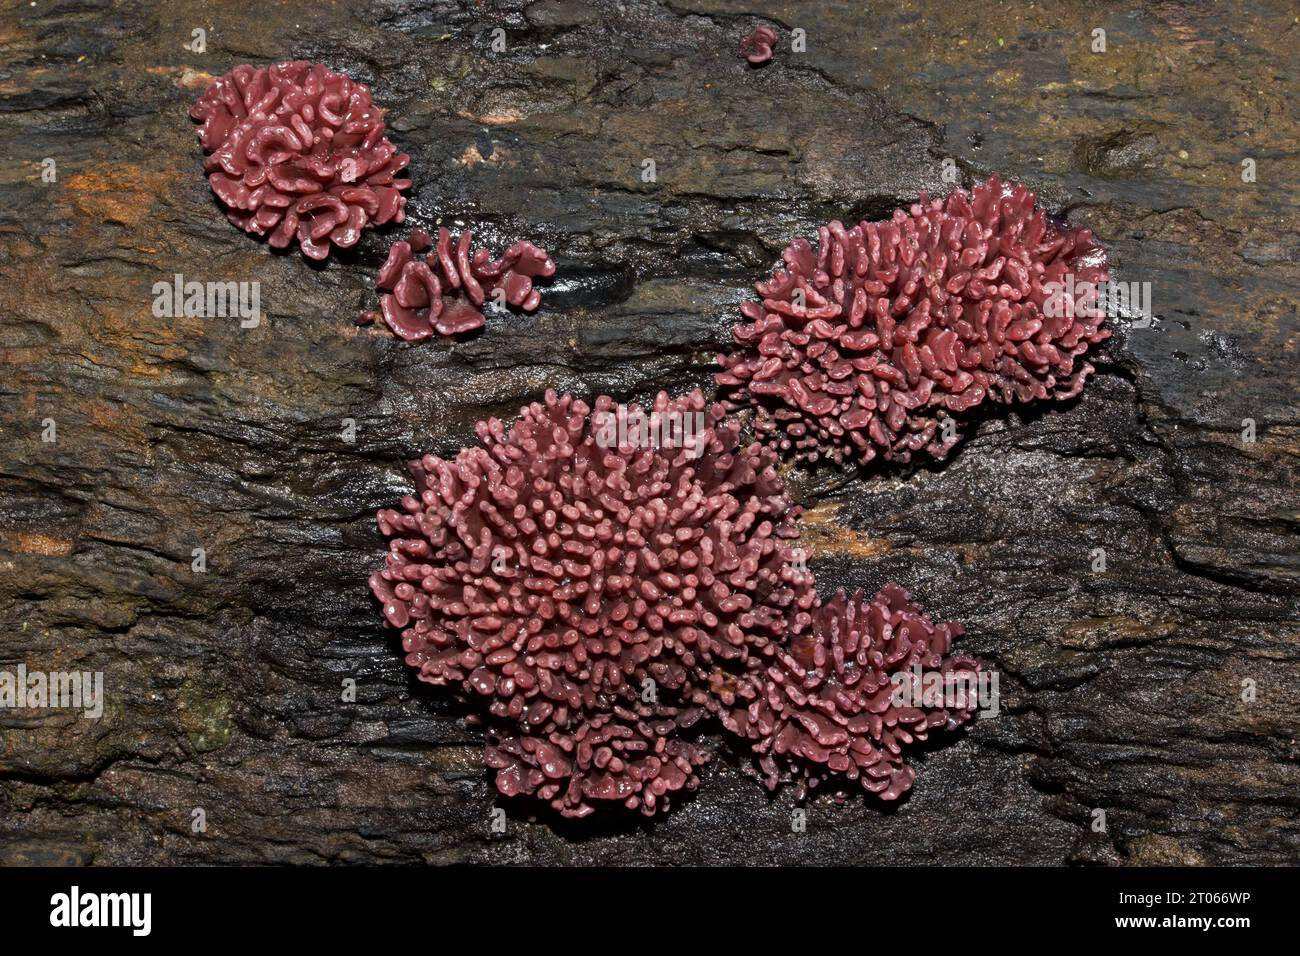 L'Ascocoryne sarcoides (gelatina viola) è un fungo di gelatina trovato sul legno morto. È ampiamente distribuito in Nord America, Europa e Asia. Foto Stock